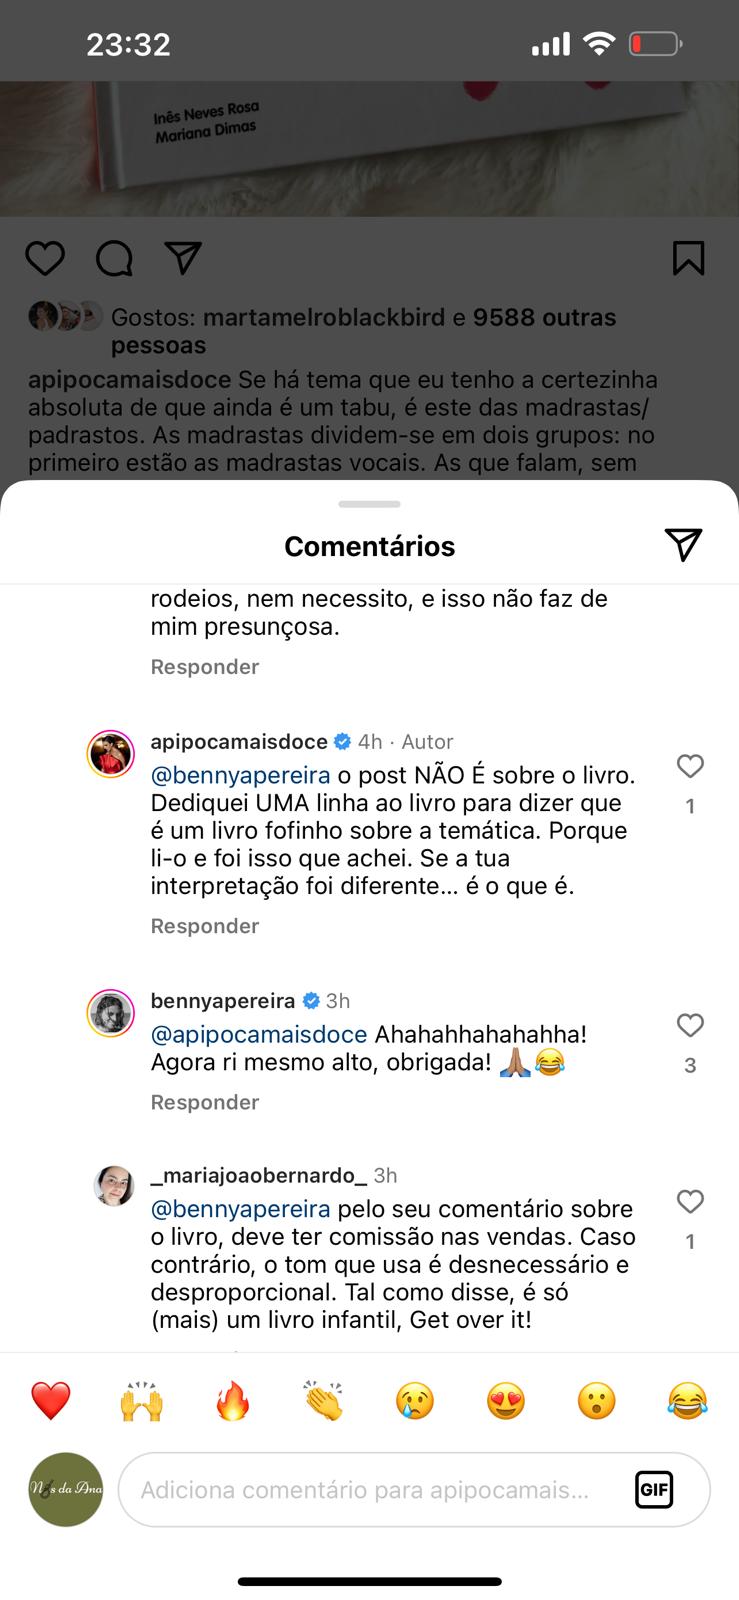 Ana Garcia Martins vs Benedita Pereira: A Guerra mais recente nas redes sociais!